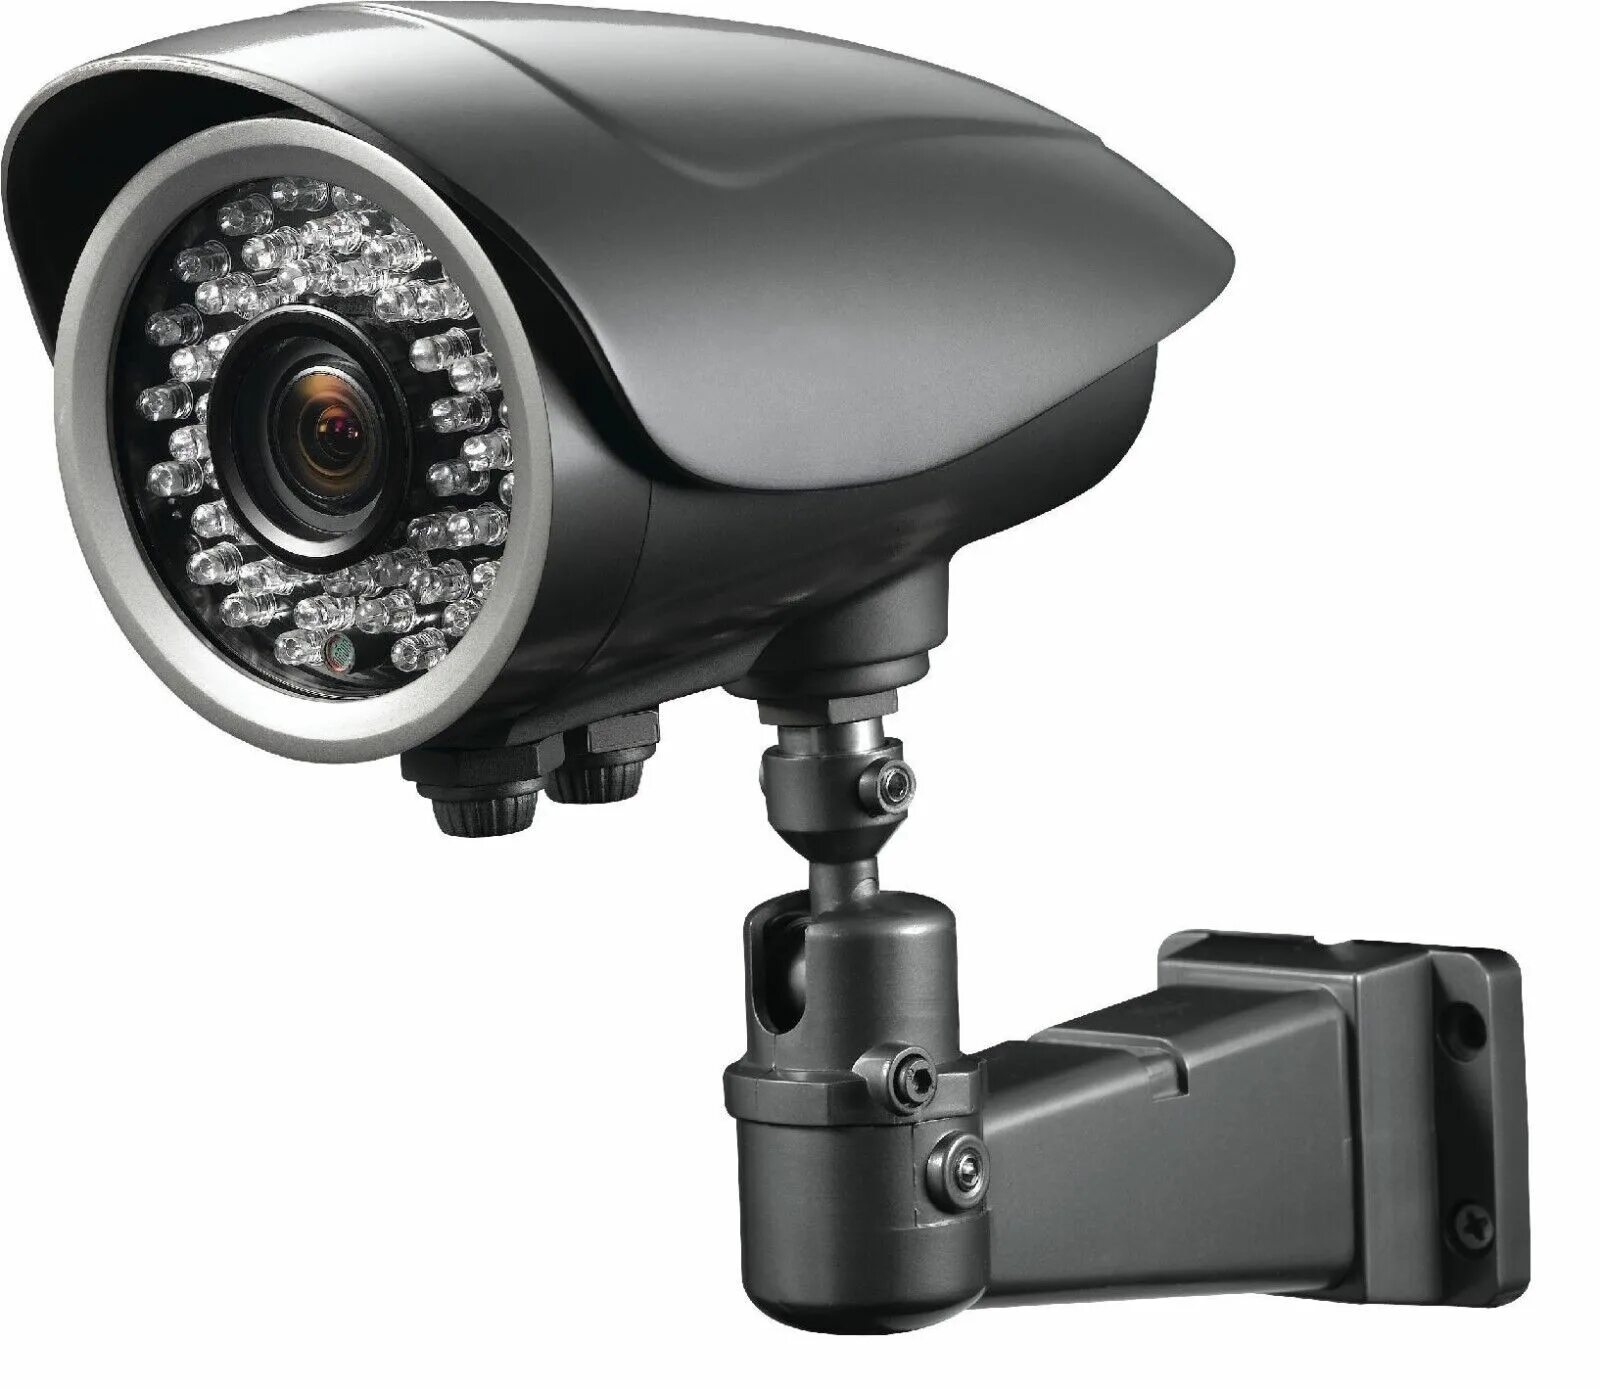 Камера тн. Камера CCTV. Камера телевизионная vc1280n. Камера видеонаблюдения Sony ENC. Уличная видеокамера высокого разрешения.